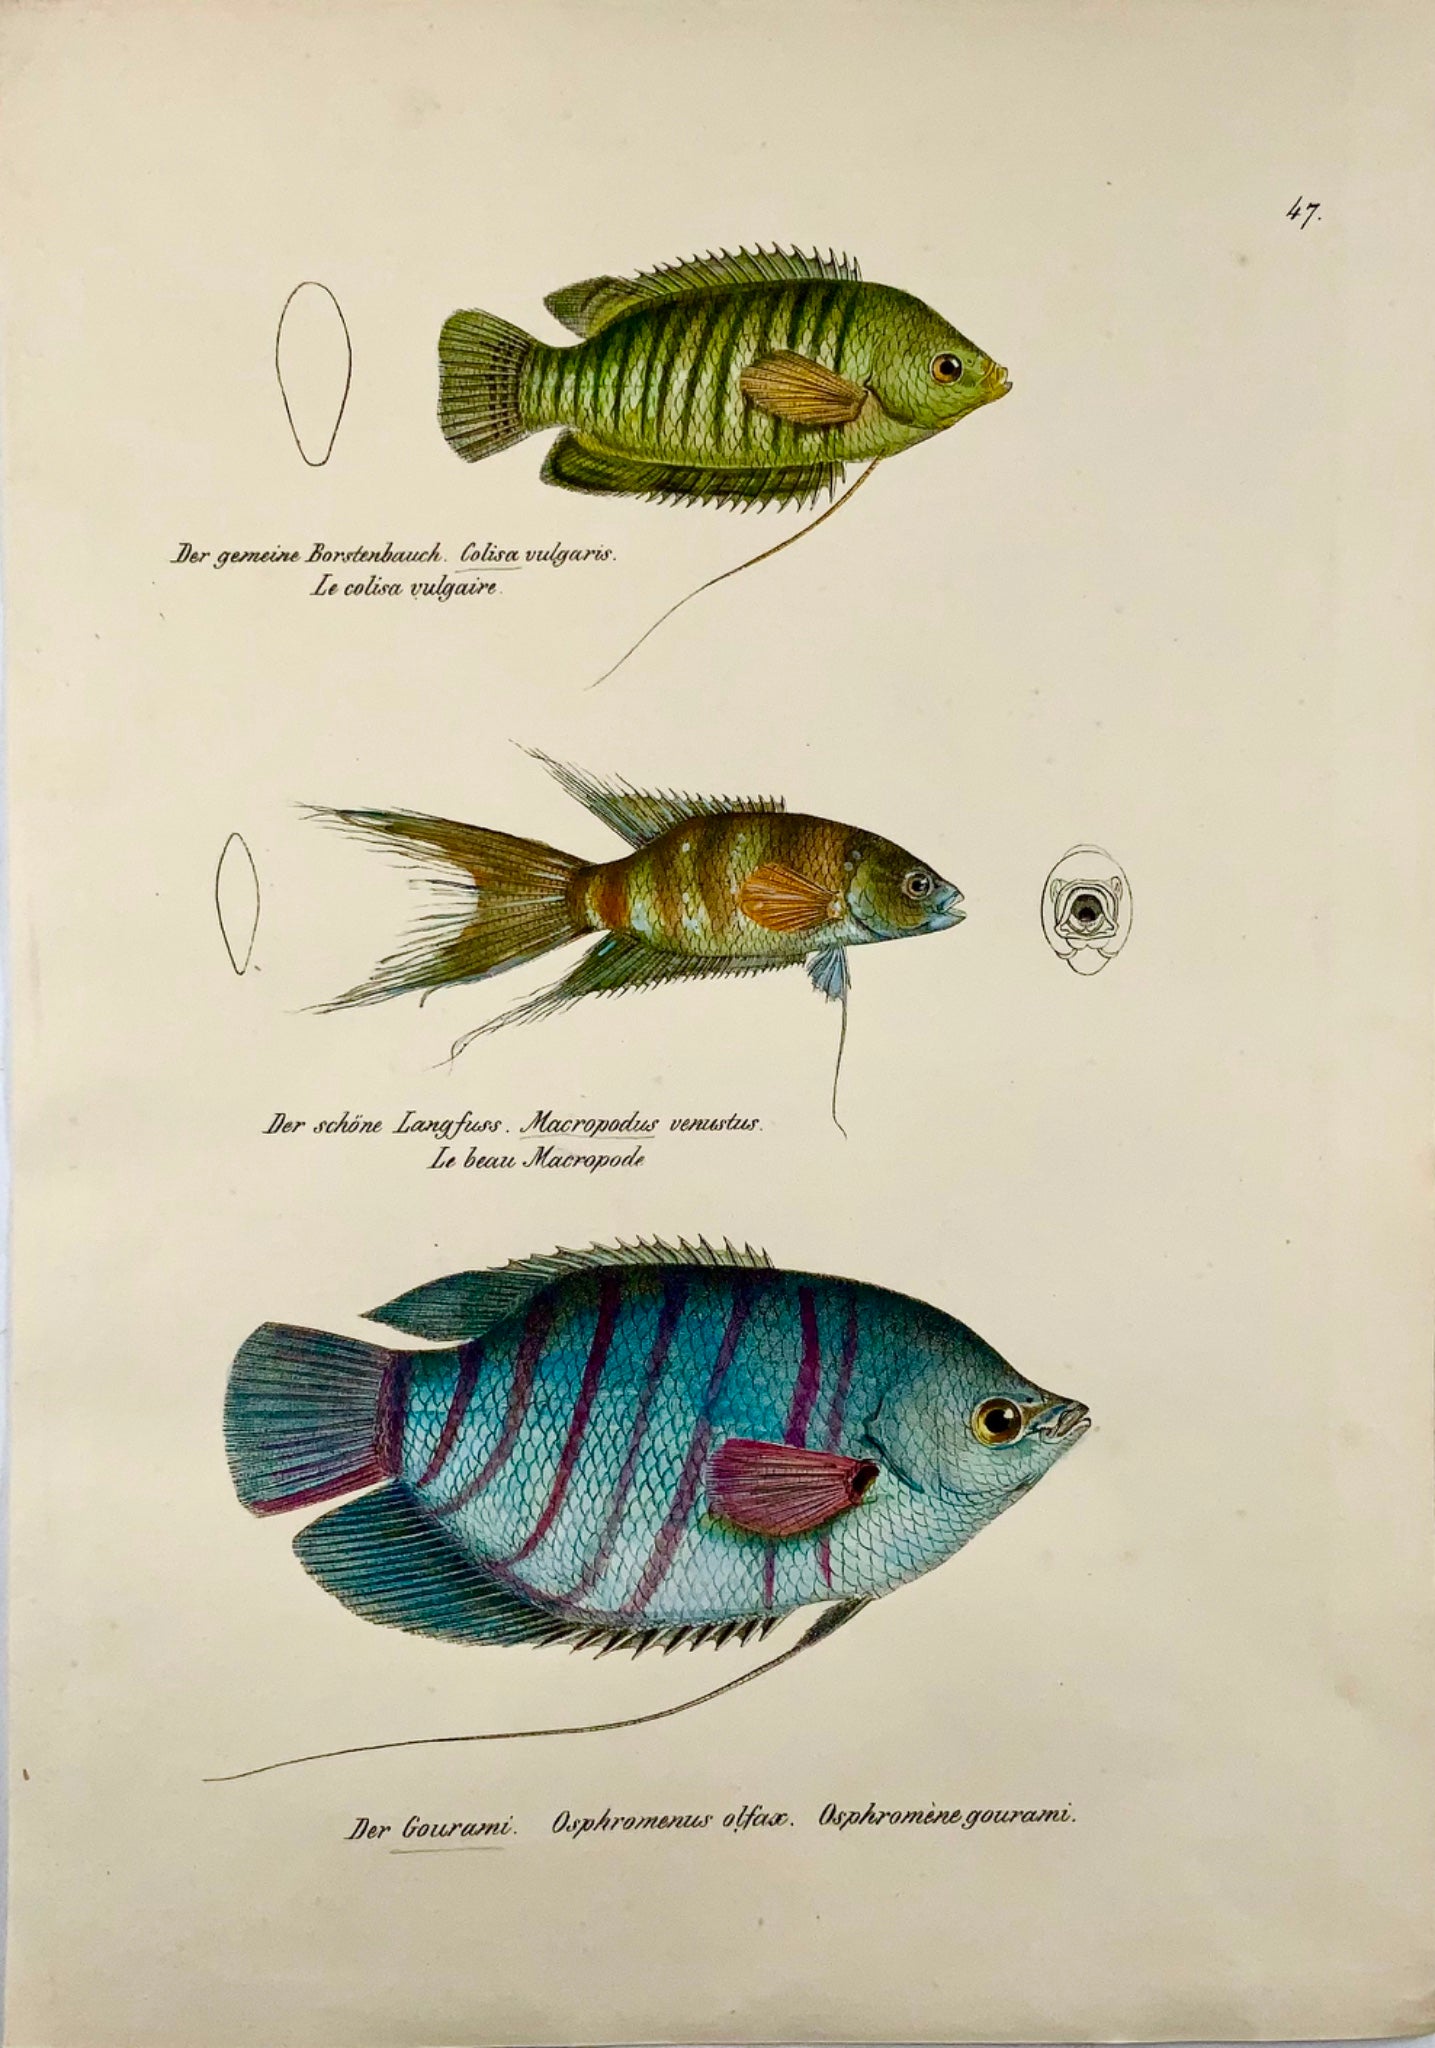 1833 Gourami, labyrinthe, poissons d'aquarium, H Schinz, folio, lithographie coloriée